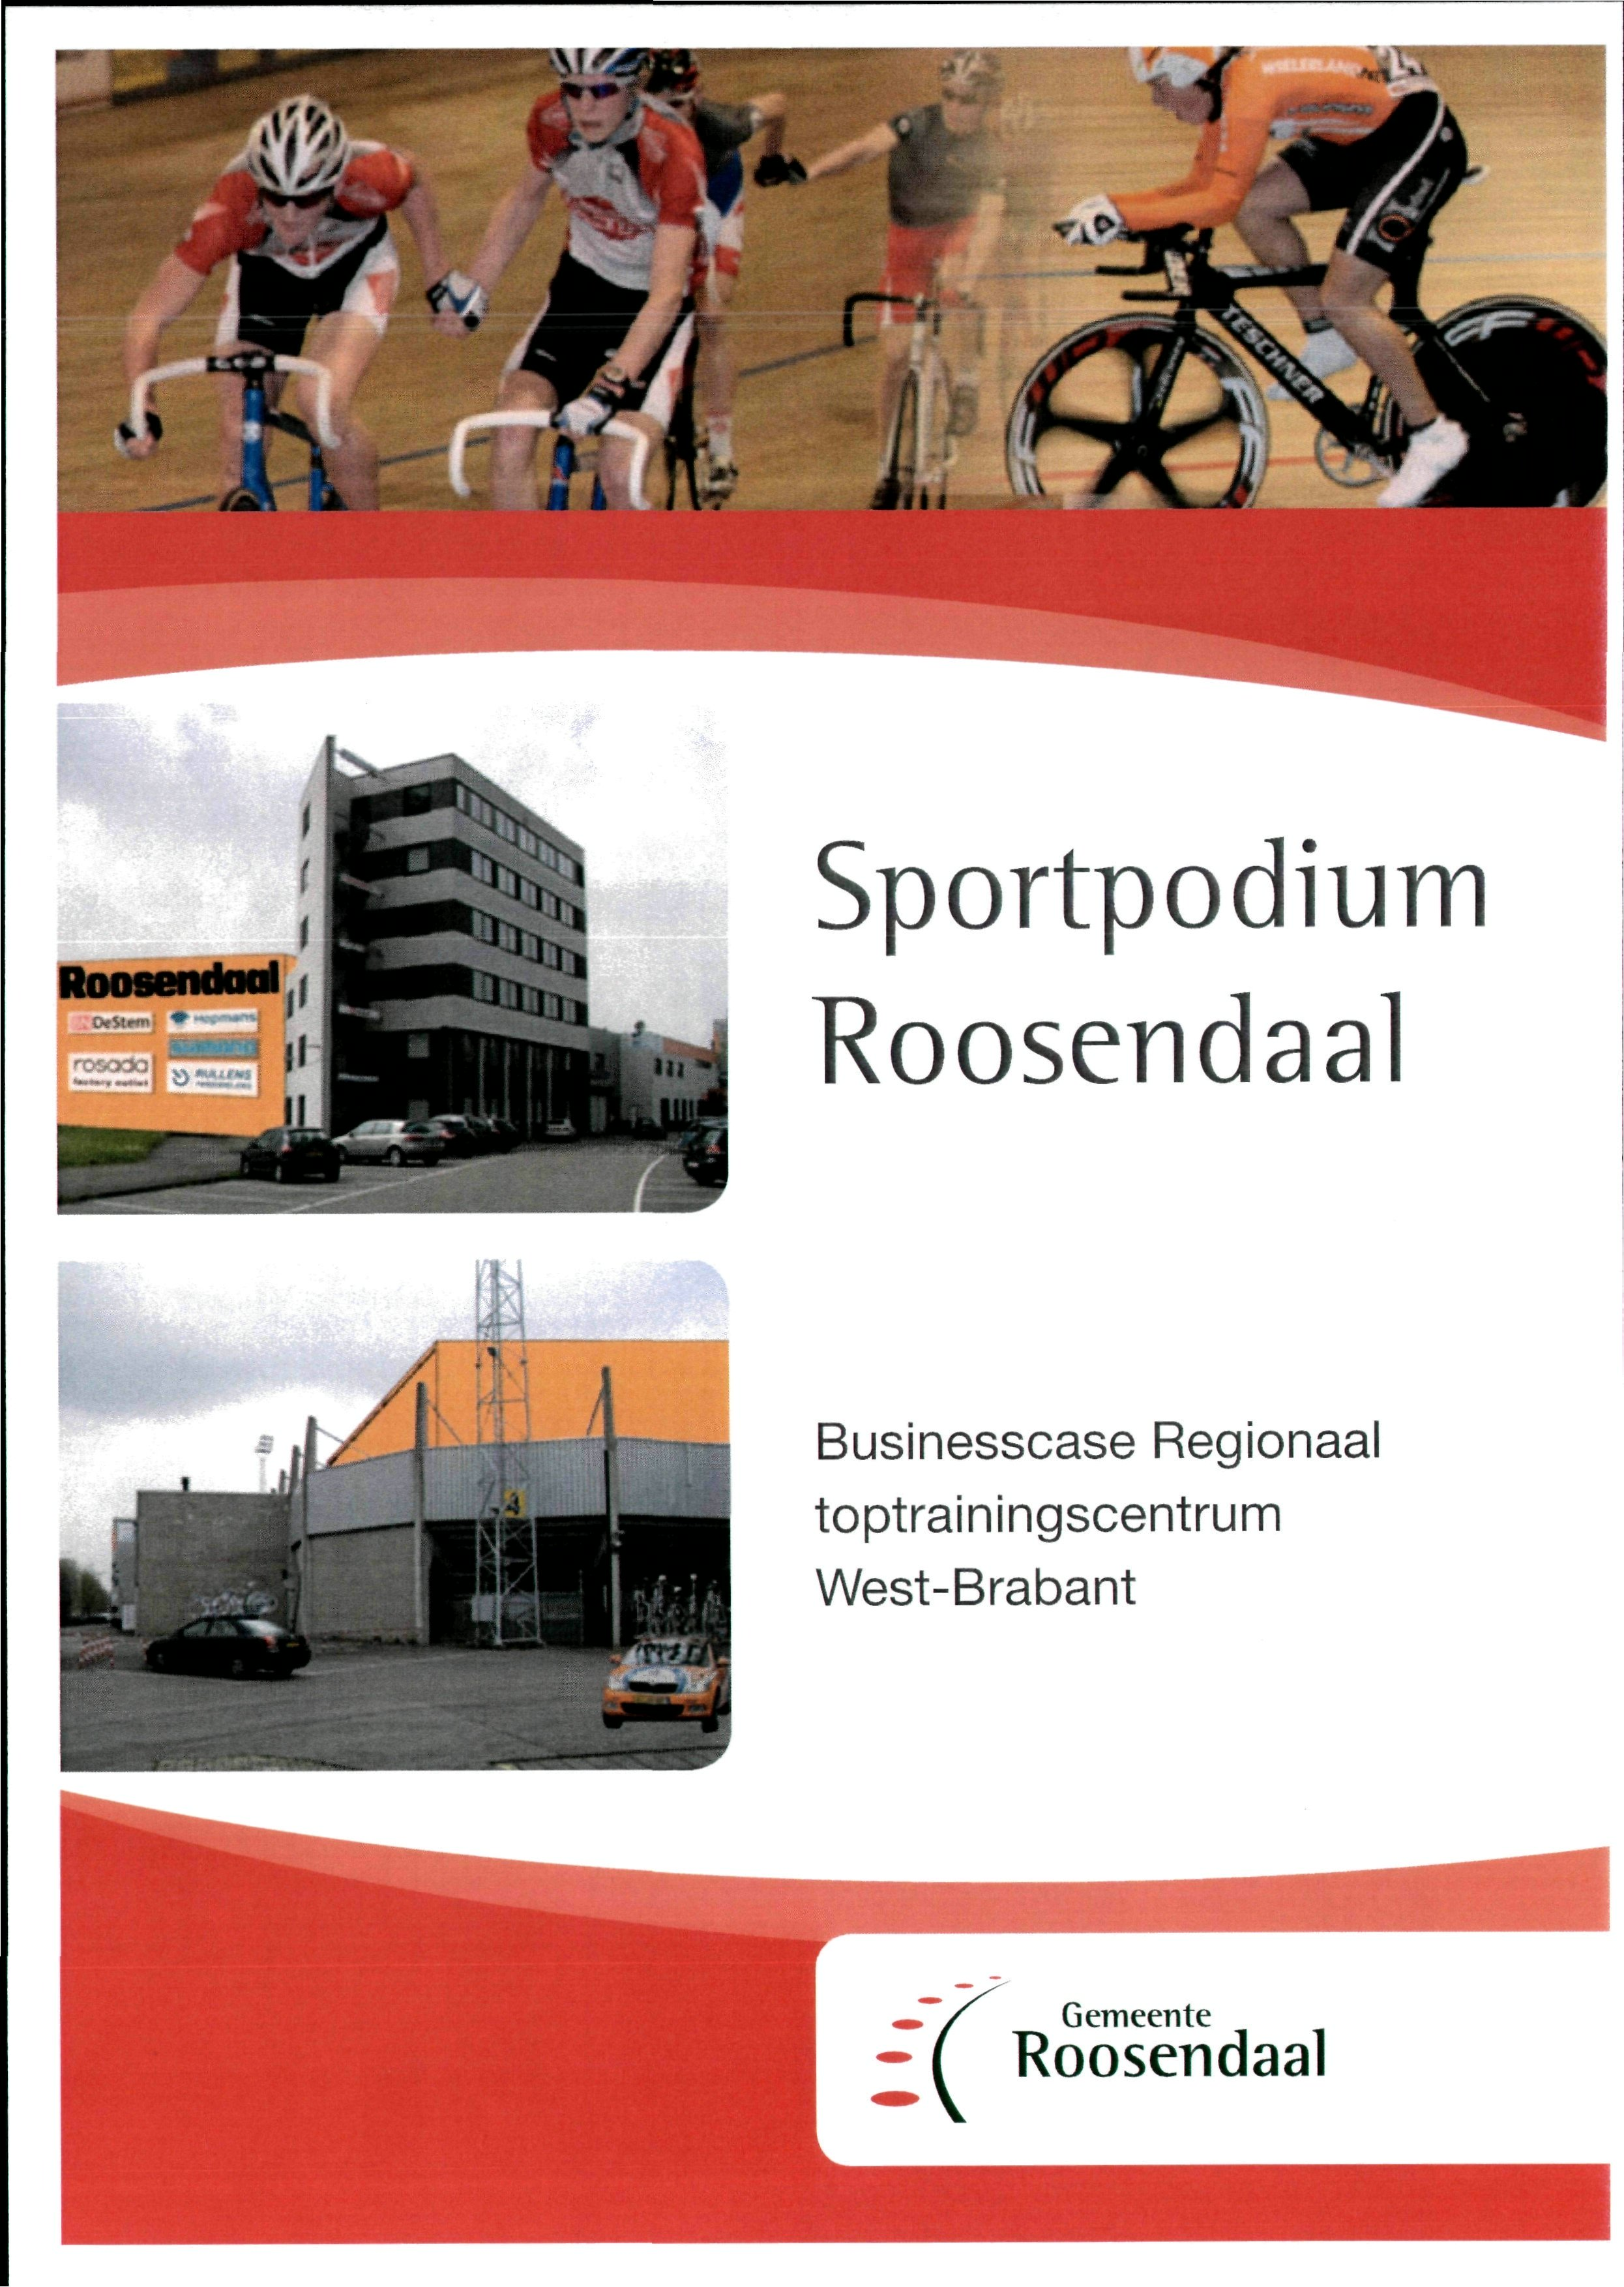 Sportpodium Businesscase Regionaal